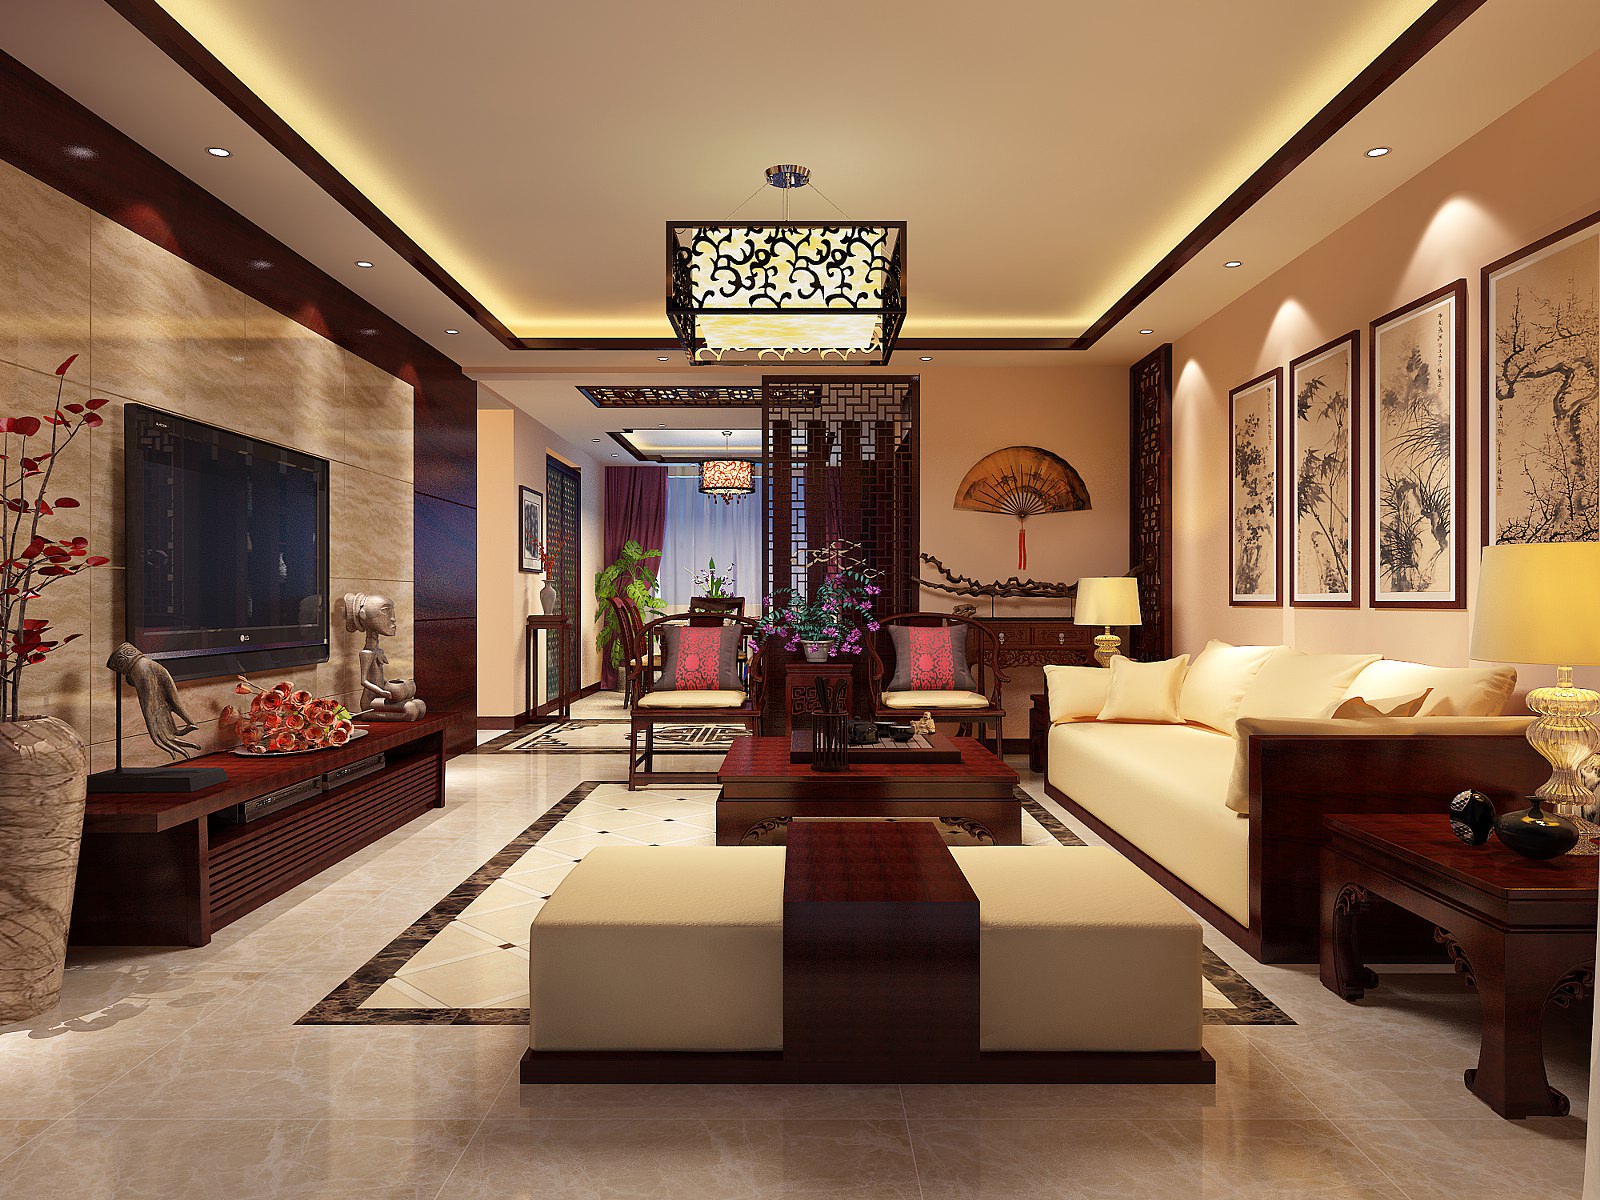 二居 客厅图片来自北京亚光亚装饰厚宅旗舰店在中式古典两居的分享